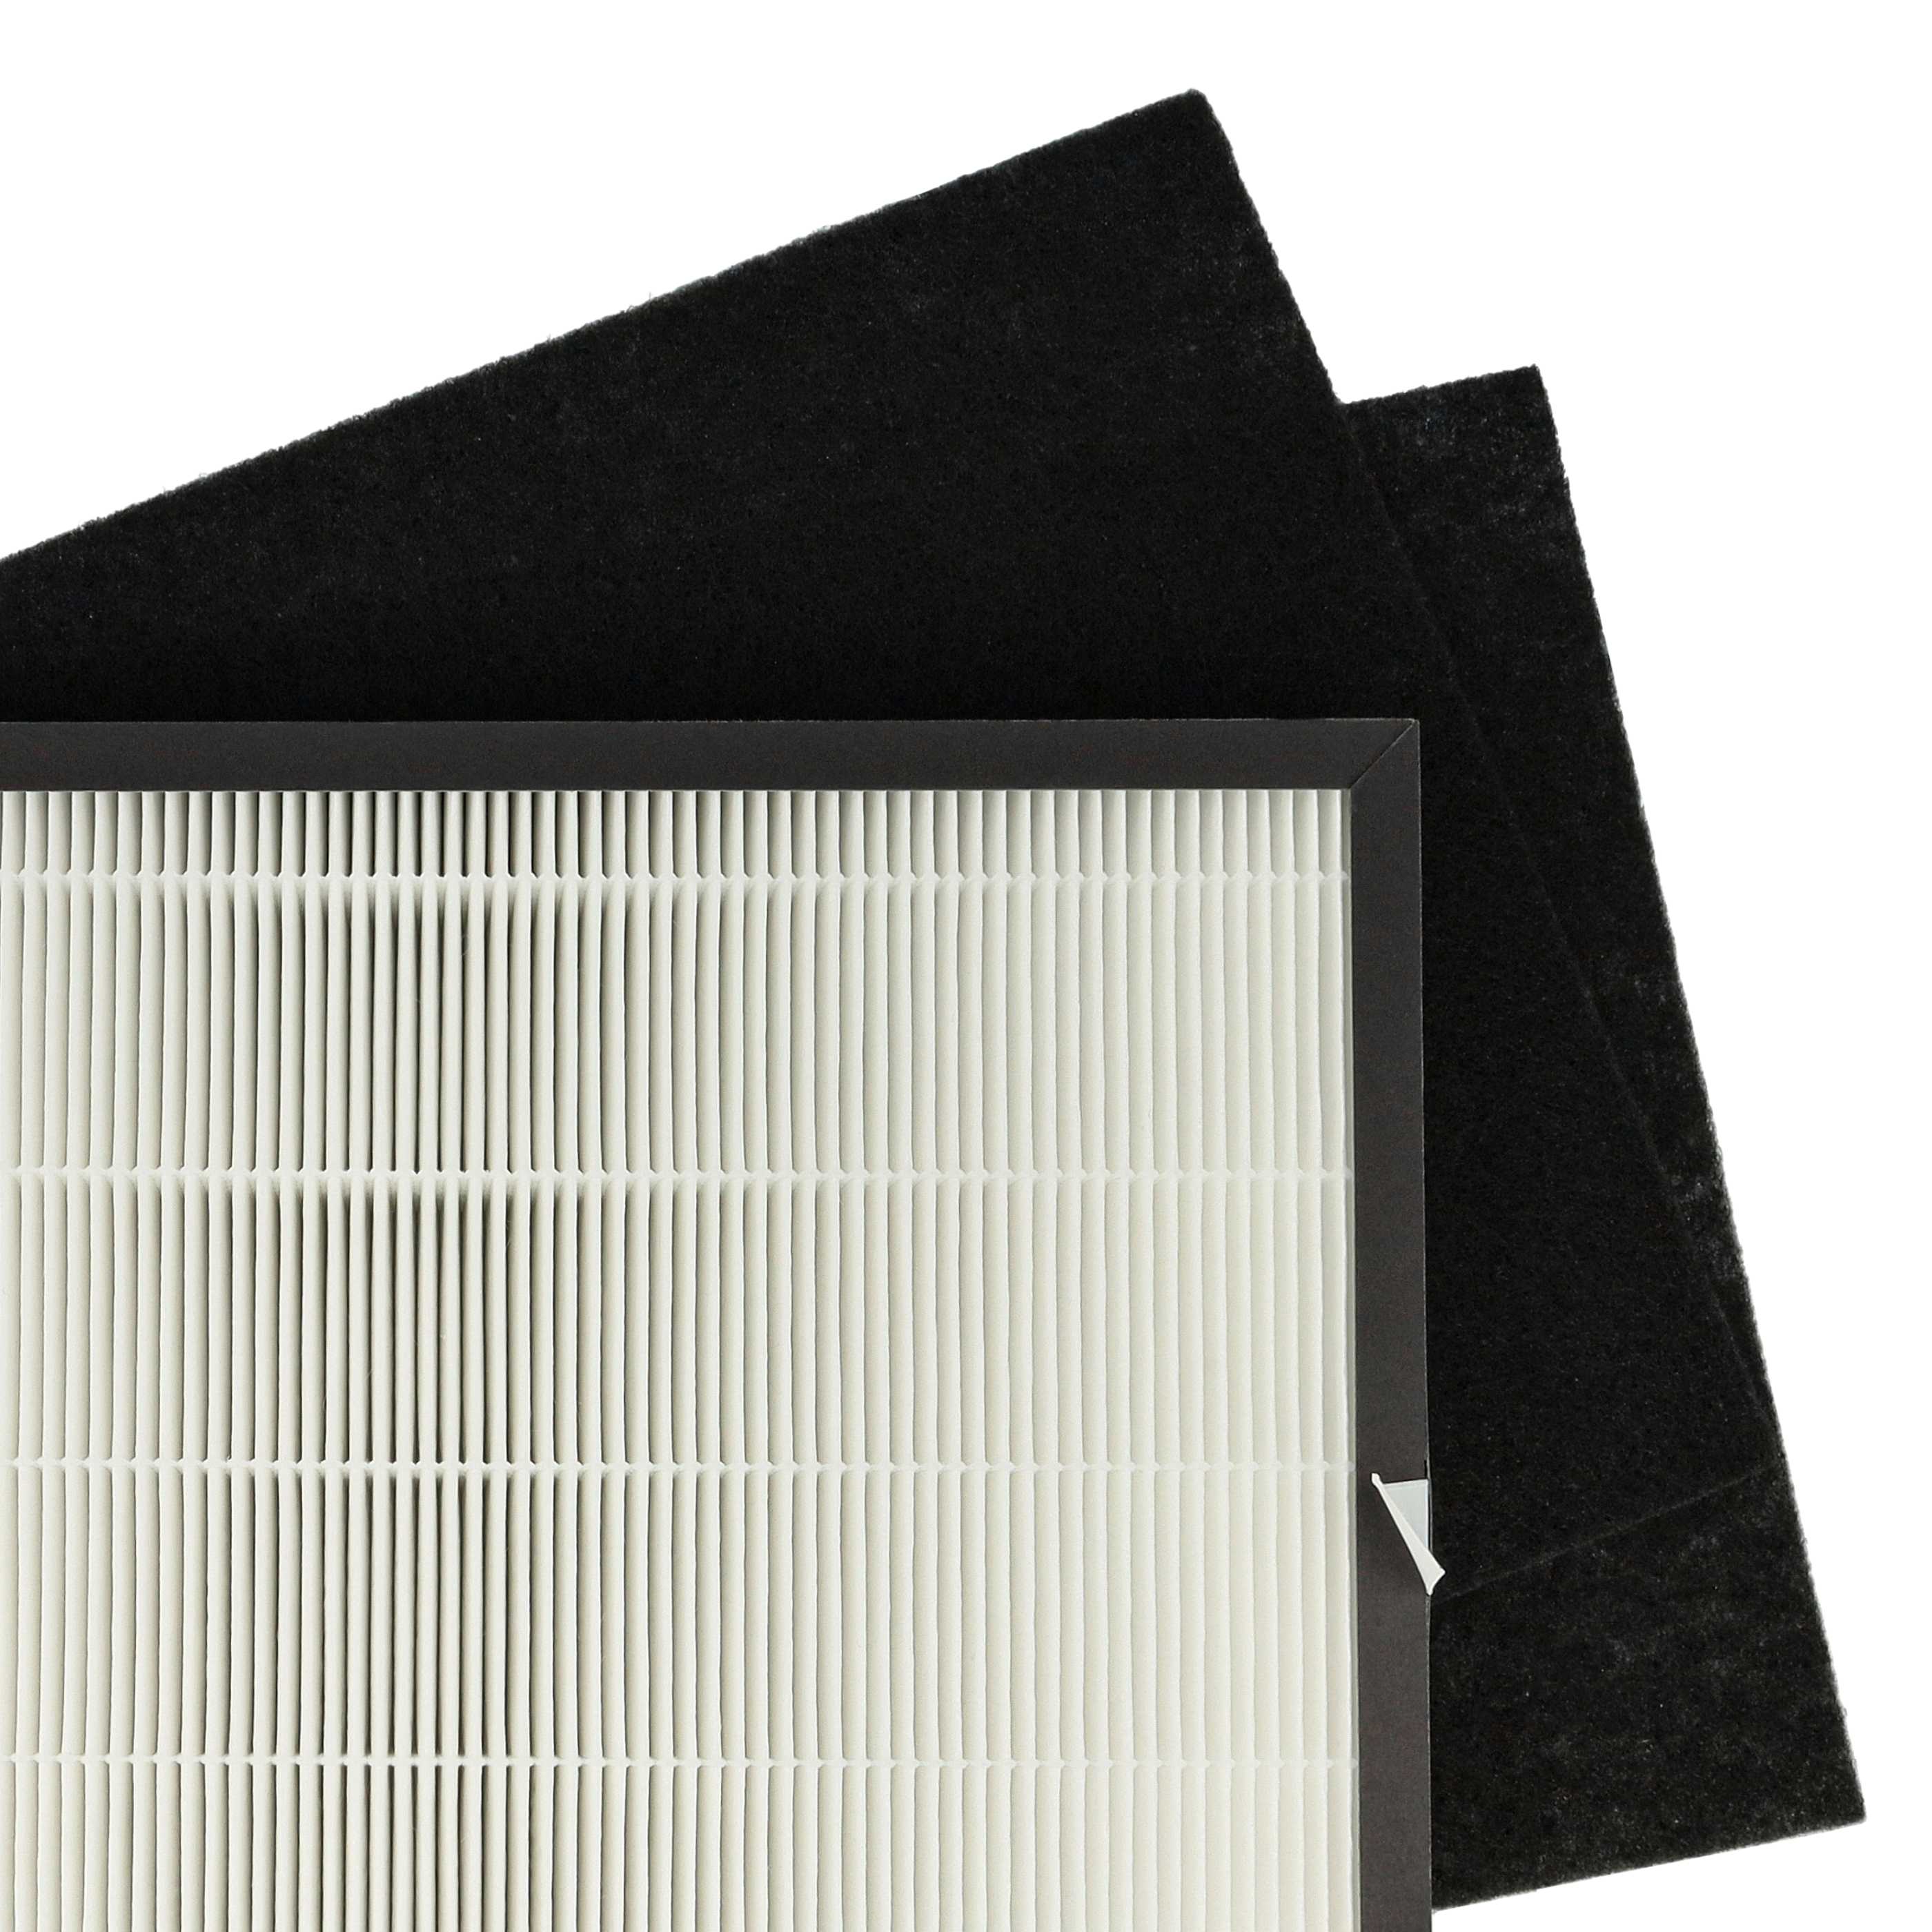 Set de filtros de 3 uds. reemplaza Rowenta H10 purificador de aire - filtro Hepa, filtro carbón activo